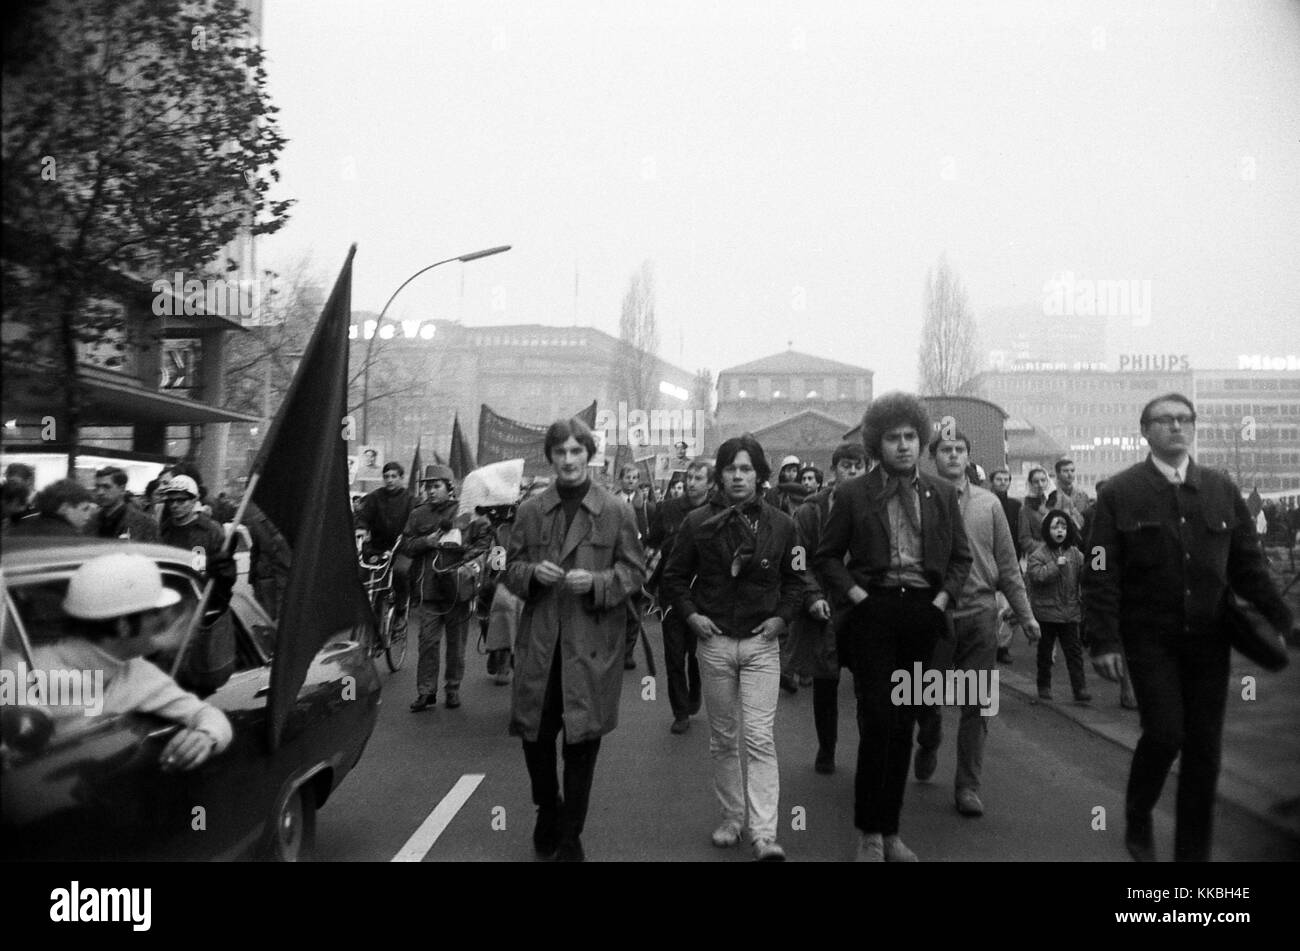 Philippe Gras / Le Pictorium - Encuentro en Berlín en 1968 - 1968 - Alemania / Berlín - El alemán manifestaciones culminan los días 17 y 18 de febrero de 1968. En Berlín, miles de estudiantes de toda Europa se opone a la guerra de Vietnam y la reforma de las universidades. El movimiento se está extendiendo a las principales ciudades universitarias alemanas. En 30 ciudades alemanas, las manifestaciones estudiantiles gire a un enfrentamiento con la policía. Estos son los disturbios de Pascua. La represión es brutal, y pone fin a las protestas. La última tiene lugar en Bonn el 11 de mayo de 1968, y reúne a un centenar de mil ejemplares del libro Foto de stock